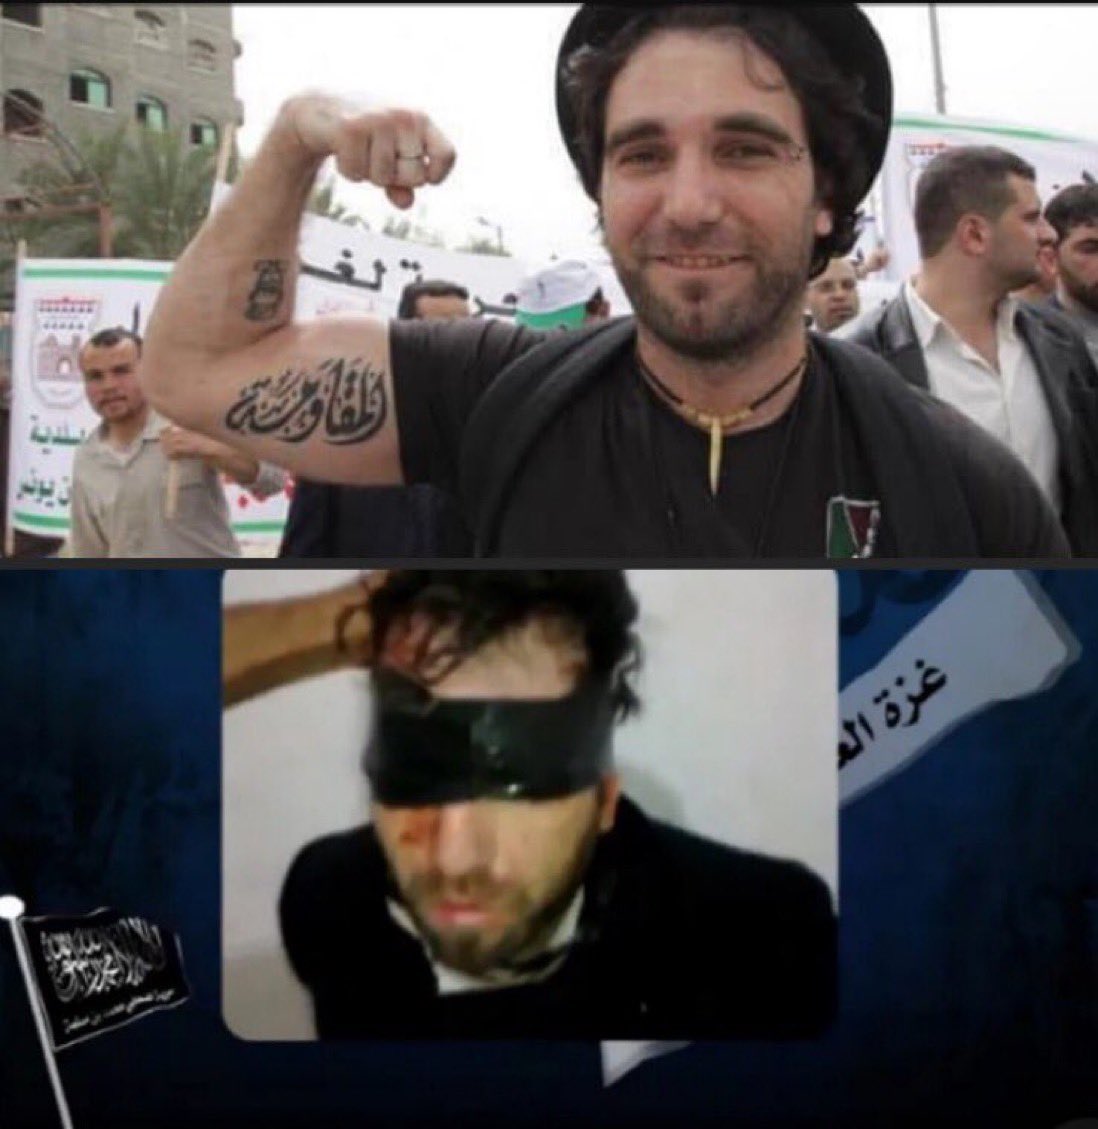 Vittorio Arrigoni, İtalyan bir muhabir, yazar, pasifist ve aktivistti. Arrigoni, Filistin'in kurtuluş davasına dikkat çekmek için 2008'de Gazze'ye taşındı ve Gazze Şeridi'ndeki Filistin yanlısı Uluslararası Dayanışma Hareketi'nde çalıştı. Vittorio Arrigoni, 2011 yılında